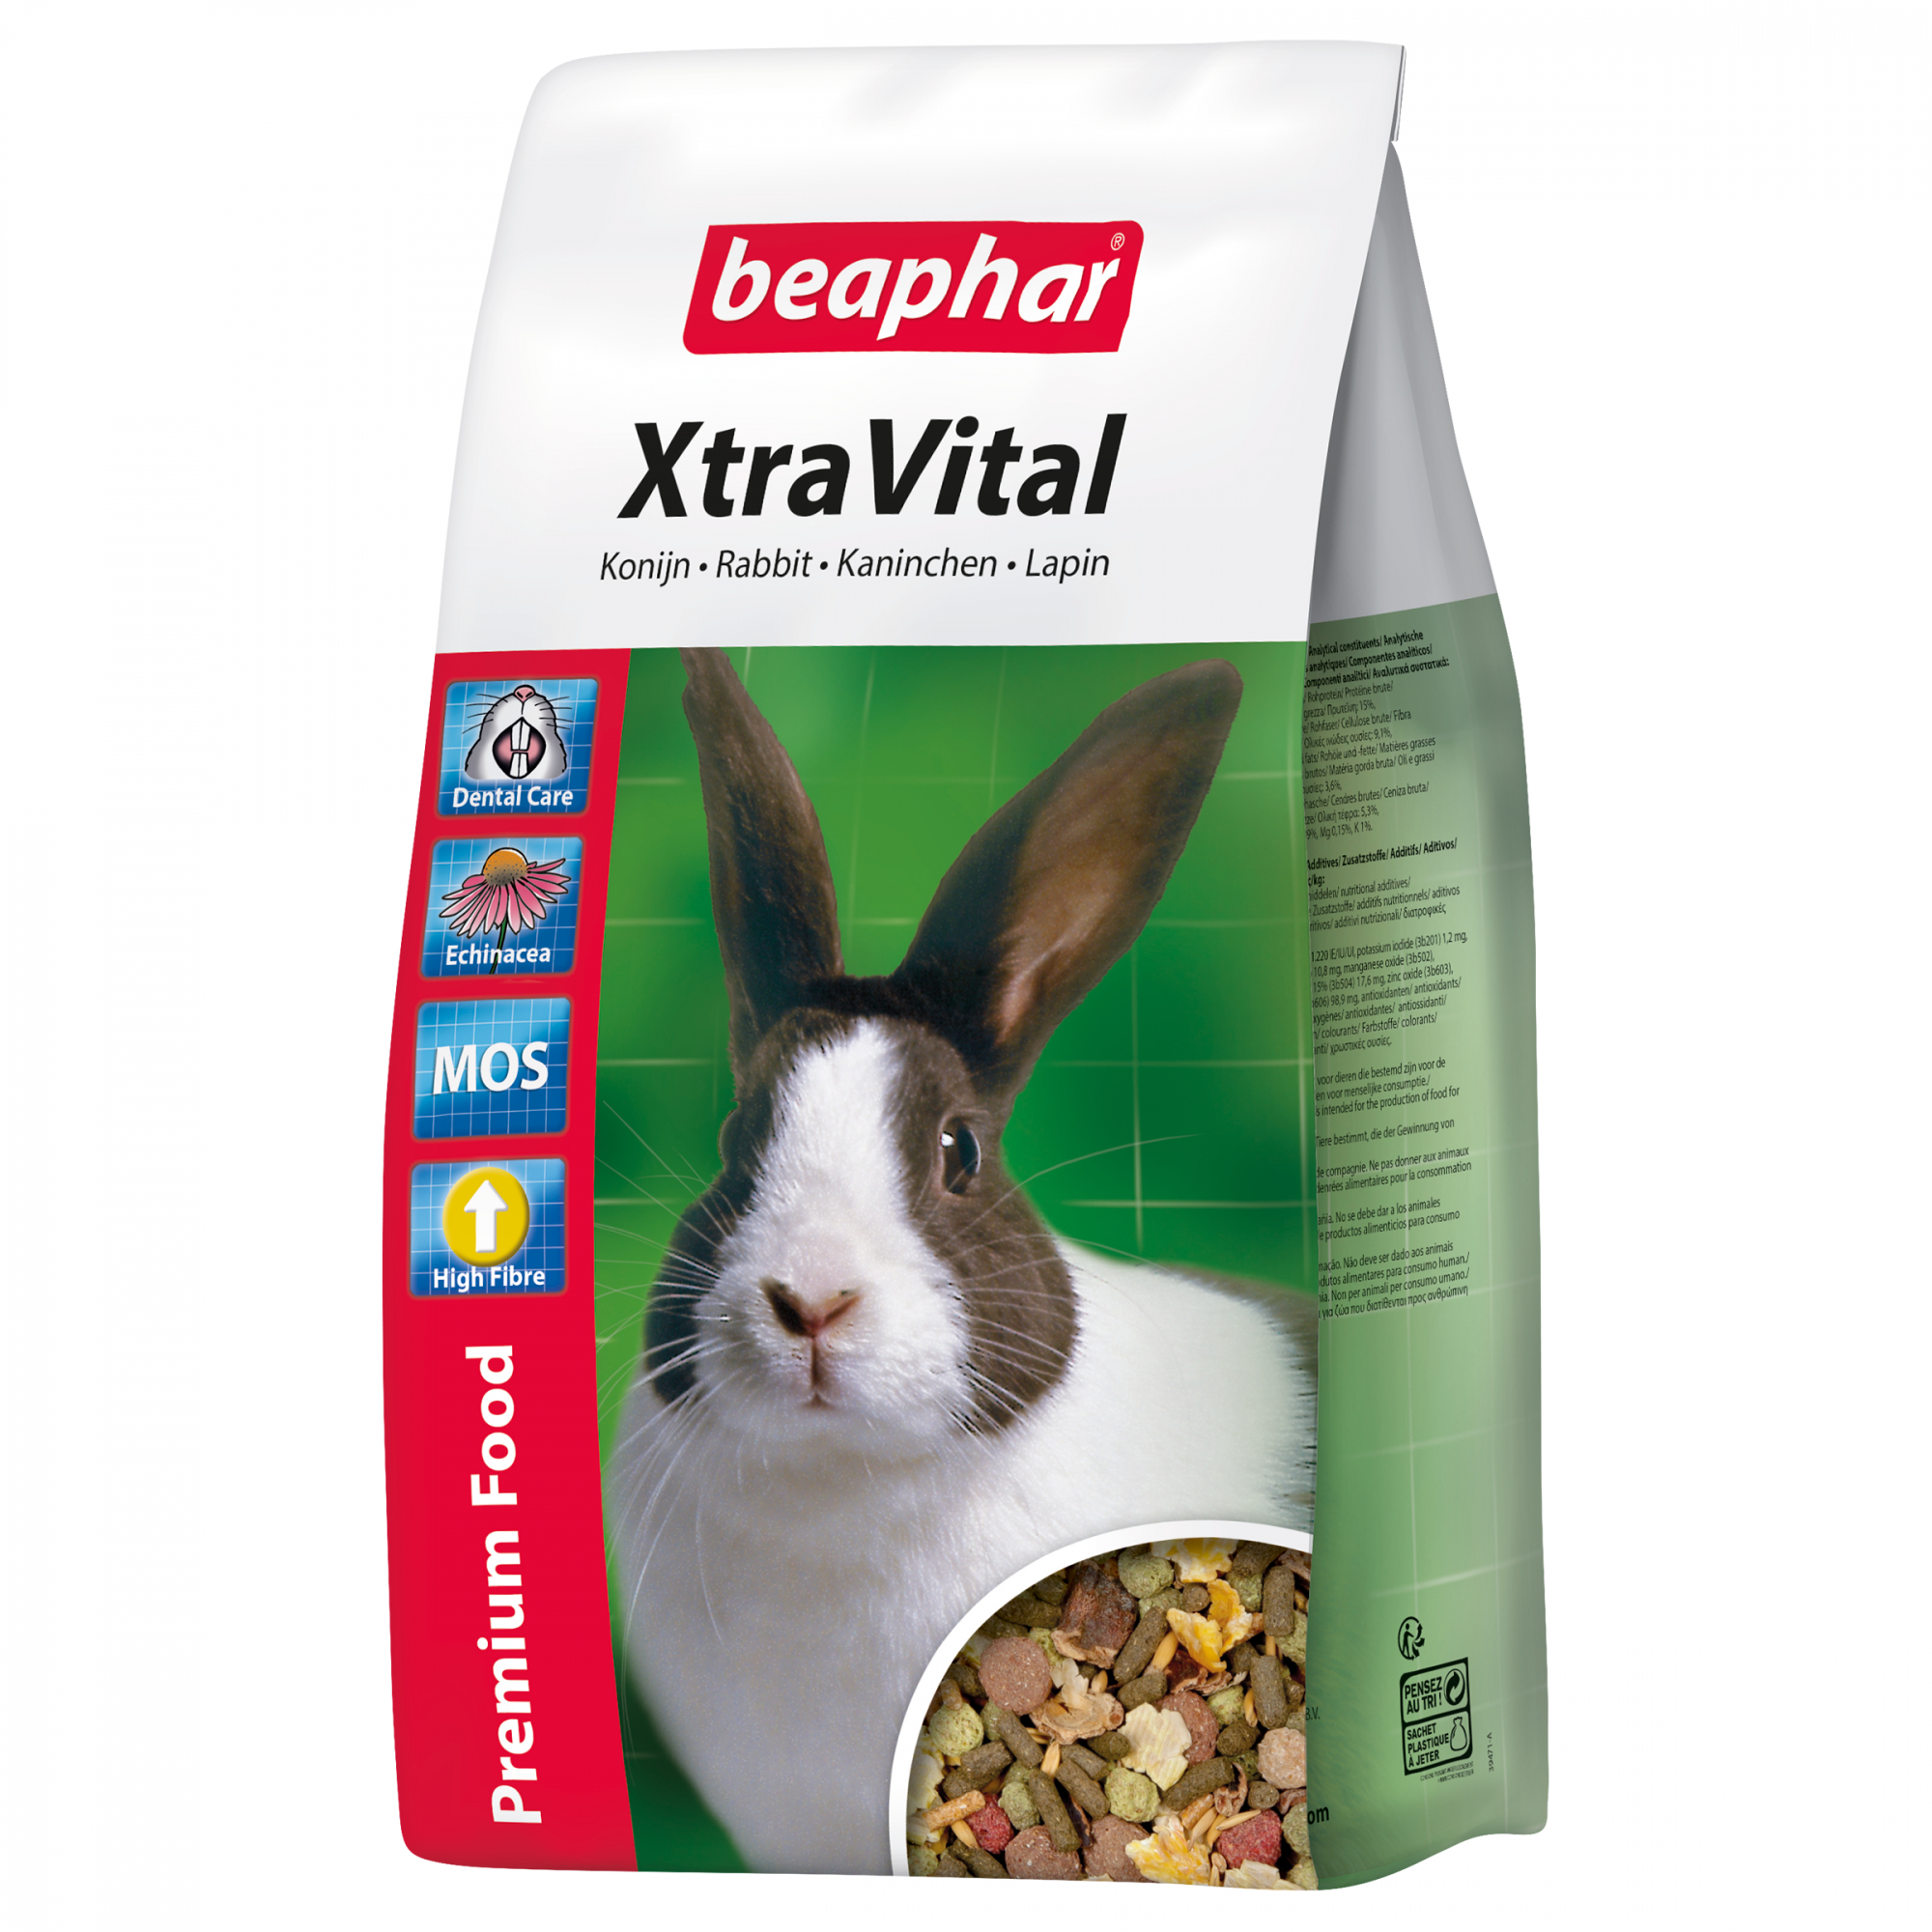 XtraVital, Premiumfutter für Kaninchen